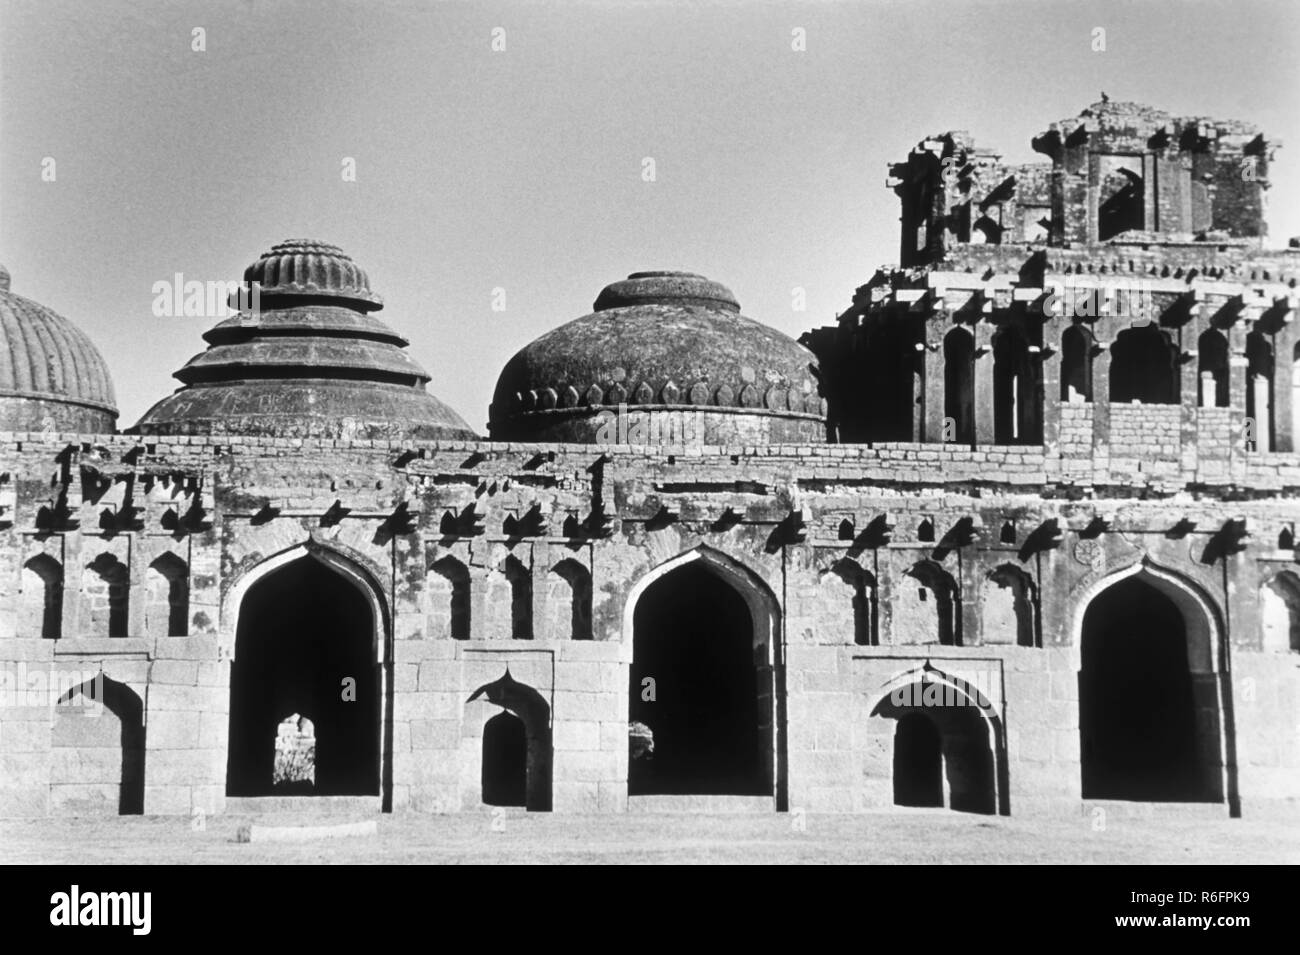 Elefantenställe, historisches Wahrzeichen, indisch-islamische Stilstruktur, Vijayanagara Empire, Hampi, Karnataka, Indien, Altes Vintage 1900s Bild Stockfoto